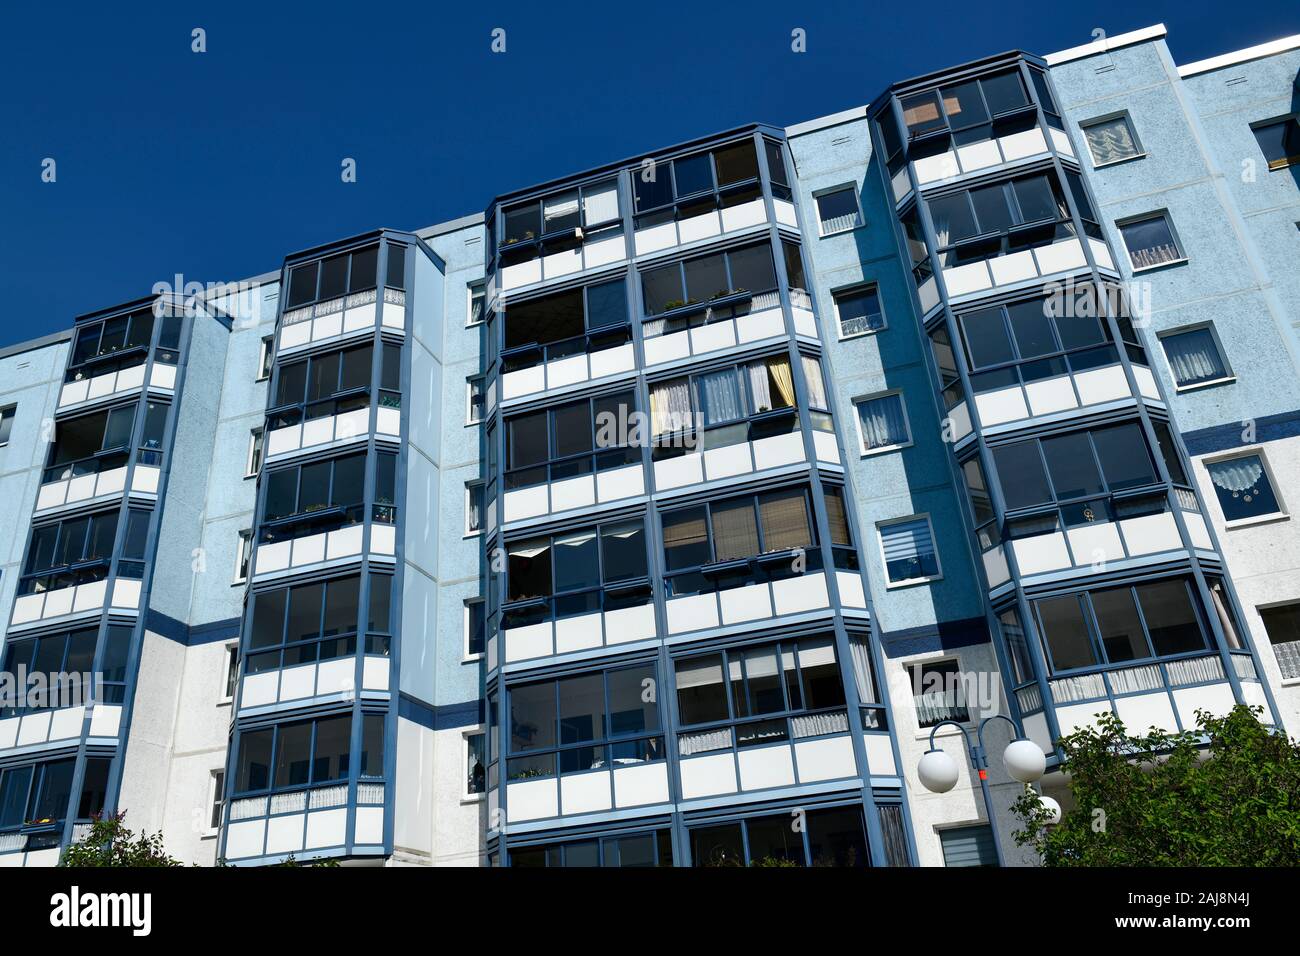 Wohnhaus, Venusstraße, Kosmosviertel, Altglienicke, Treptow-Köpenick, Berlin, Deutschland Stock Photo